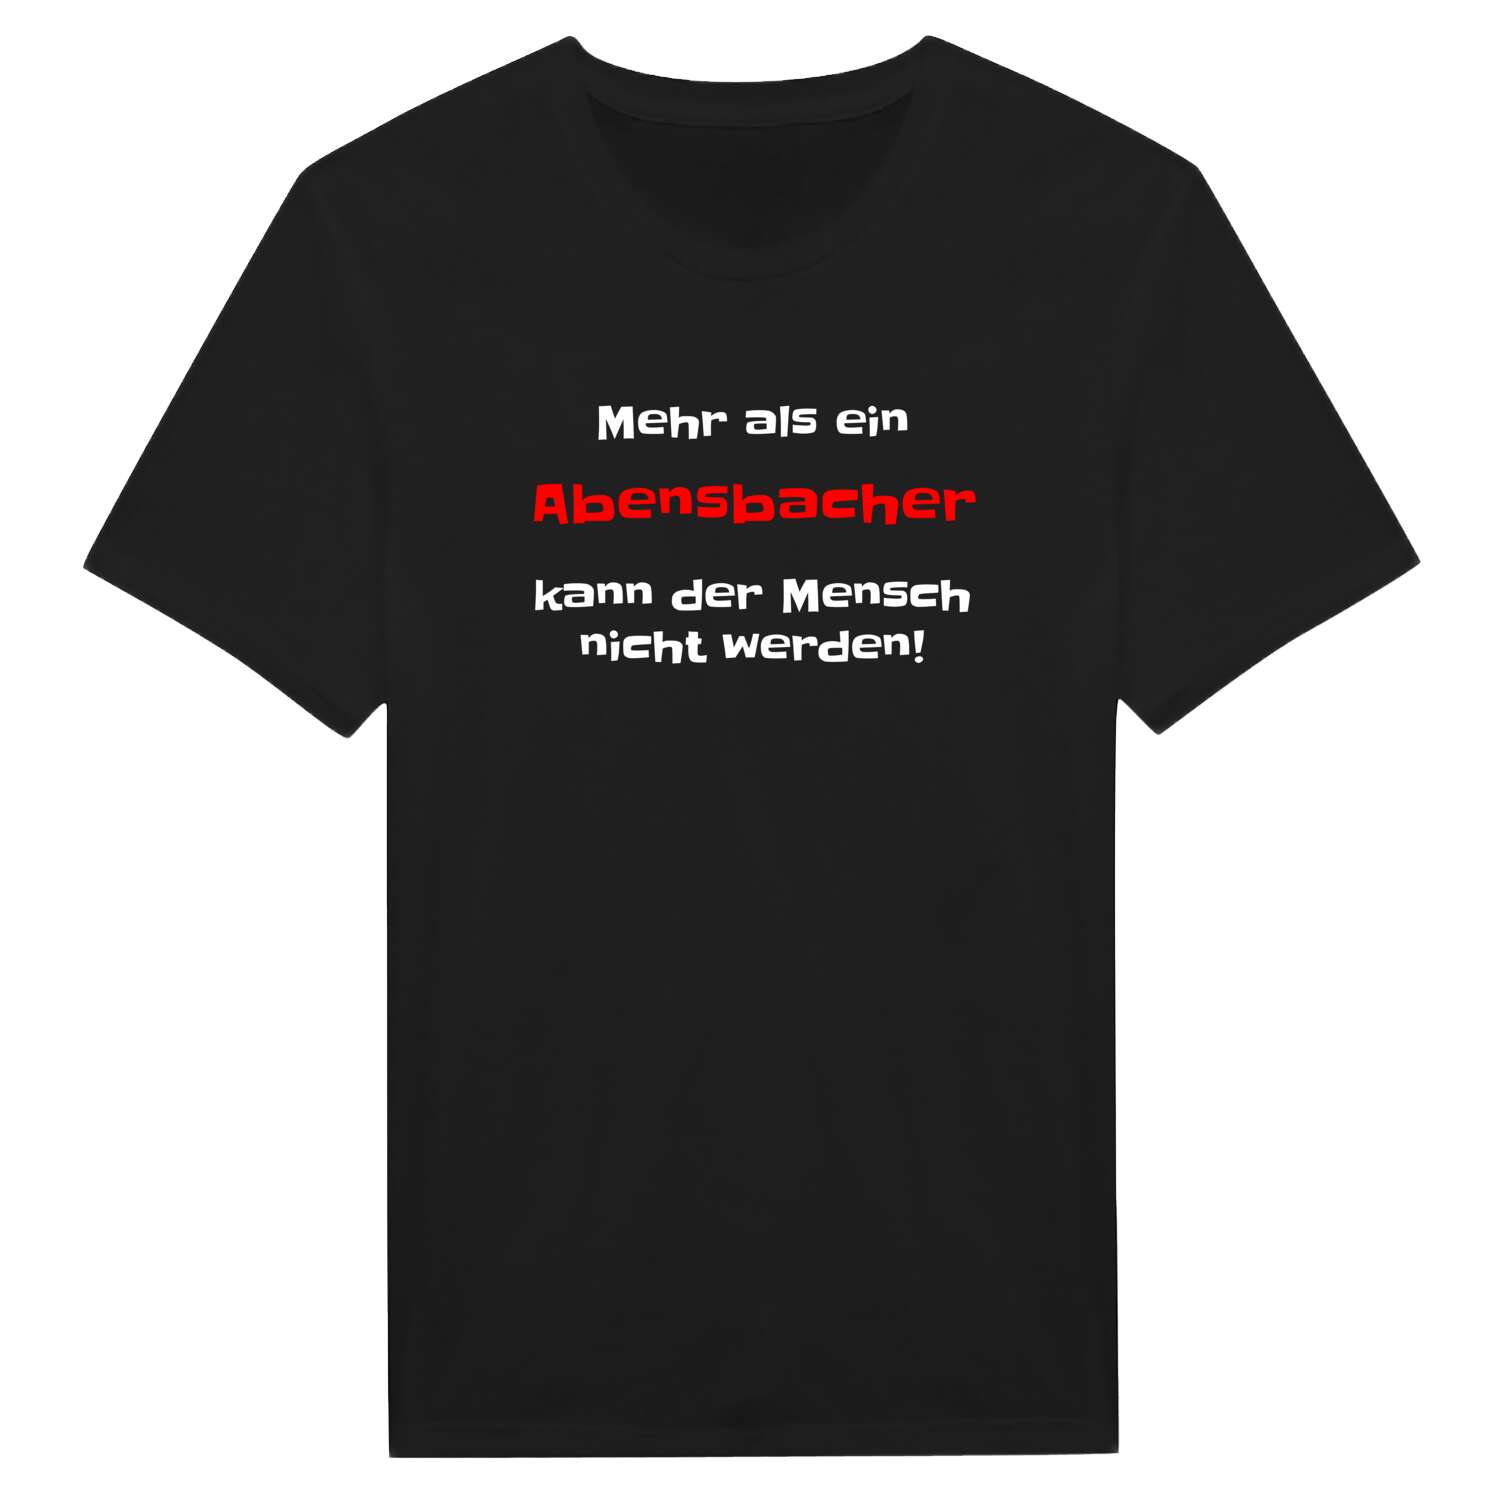 Abensbach T-Shirt »Mehr als ein«